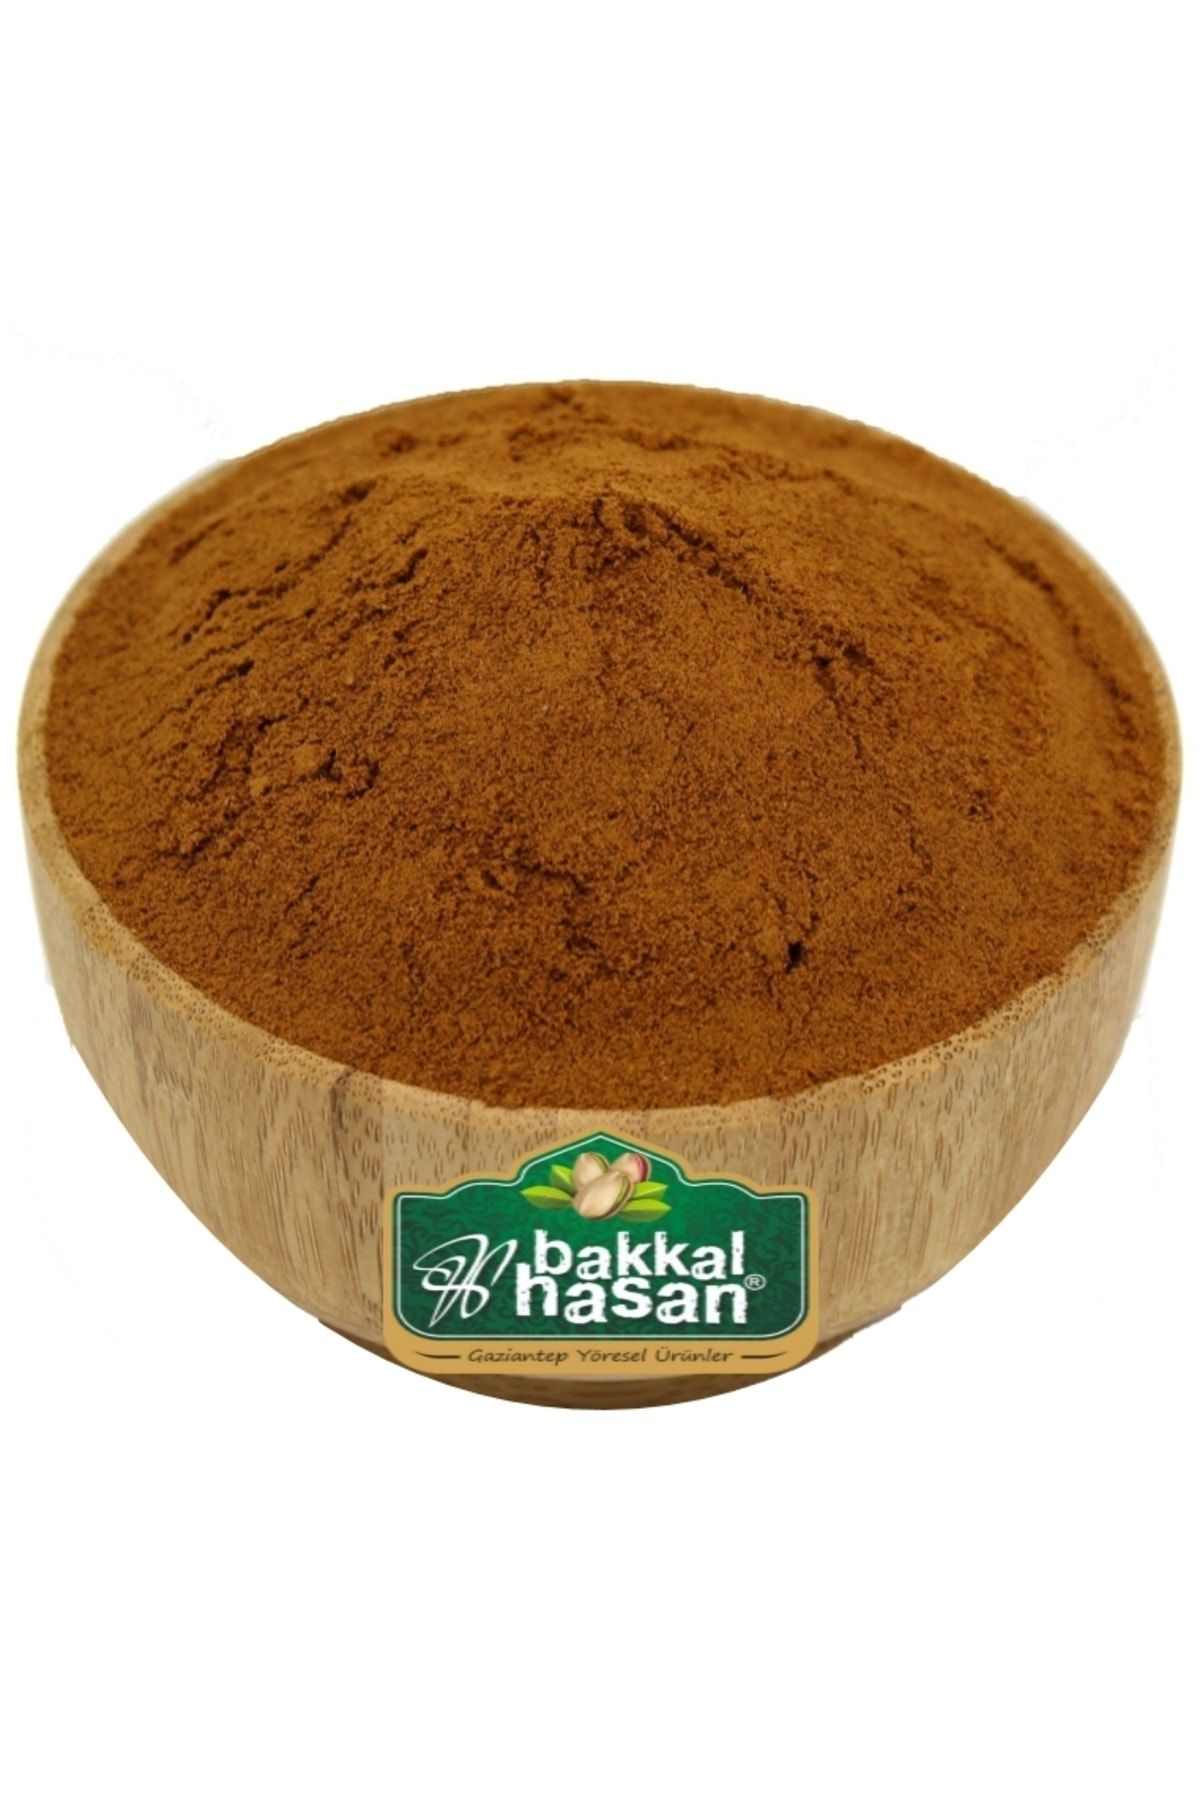 bakkal hasan Damla Sakızlı Toz Kahve 50 gr - Bakkal Hasan